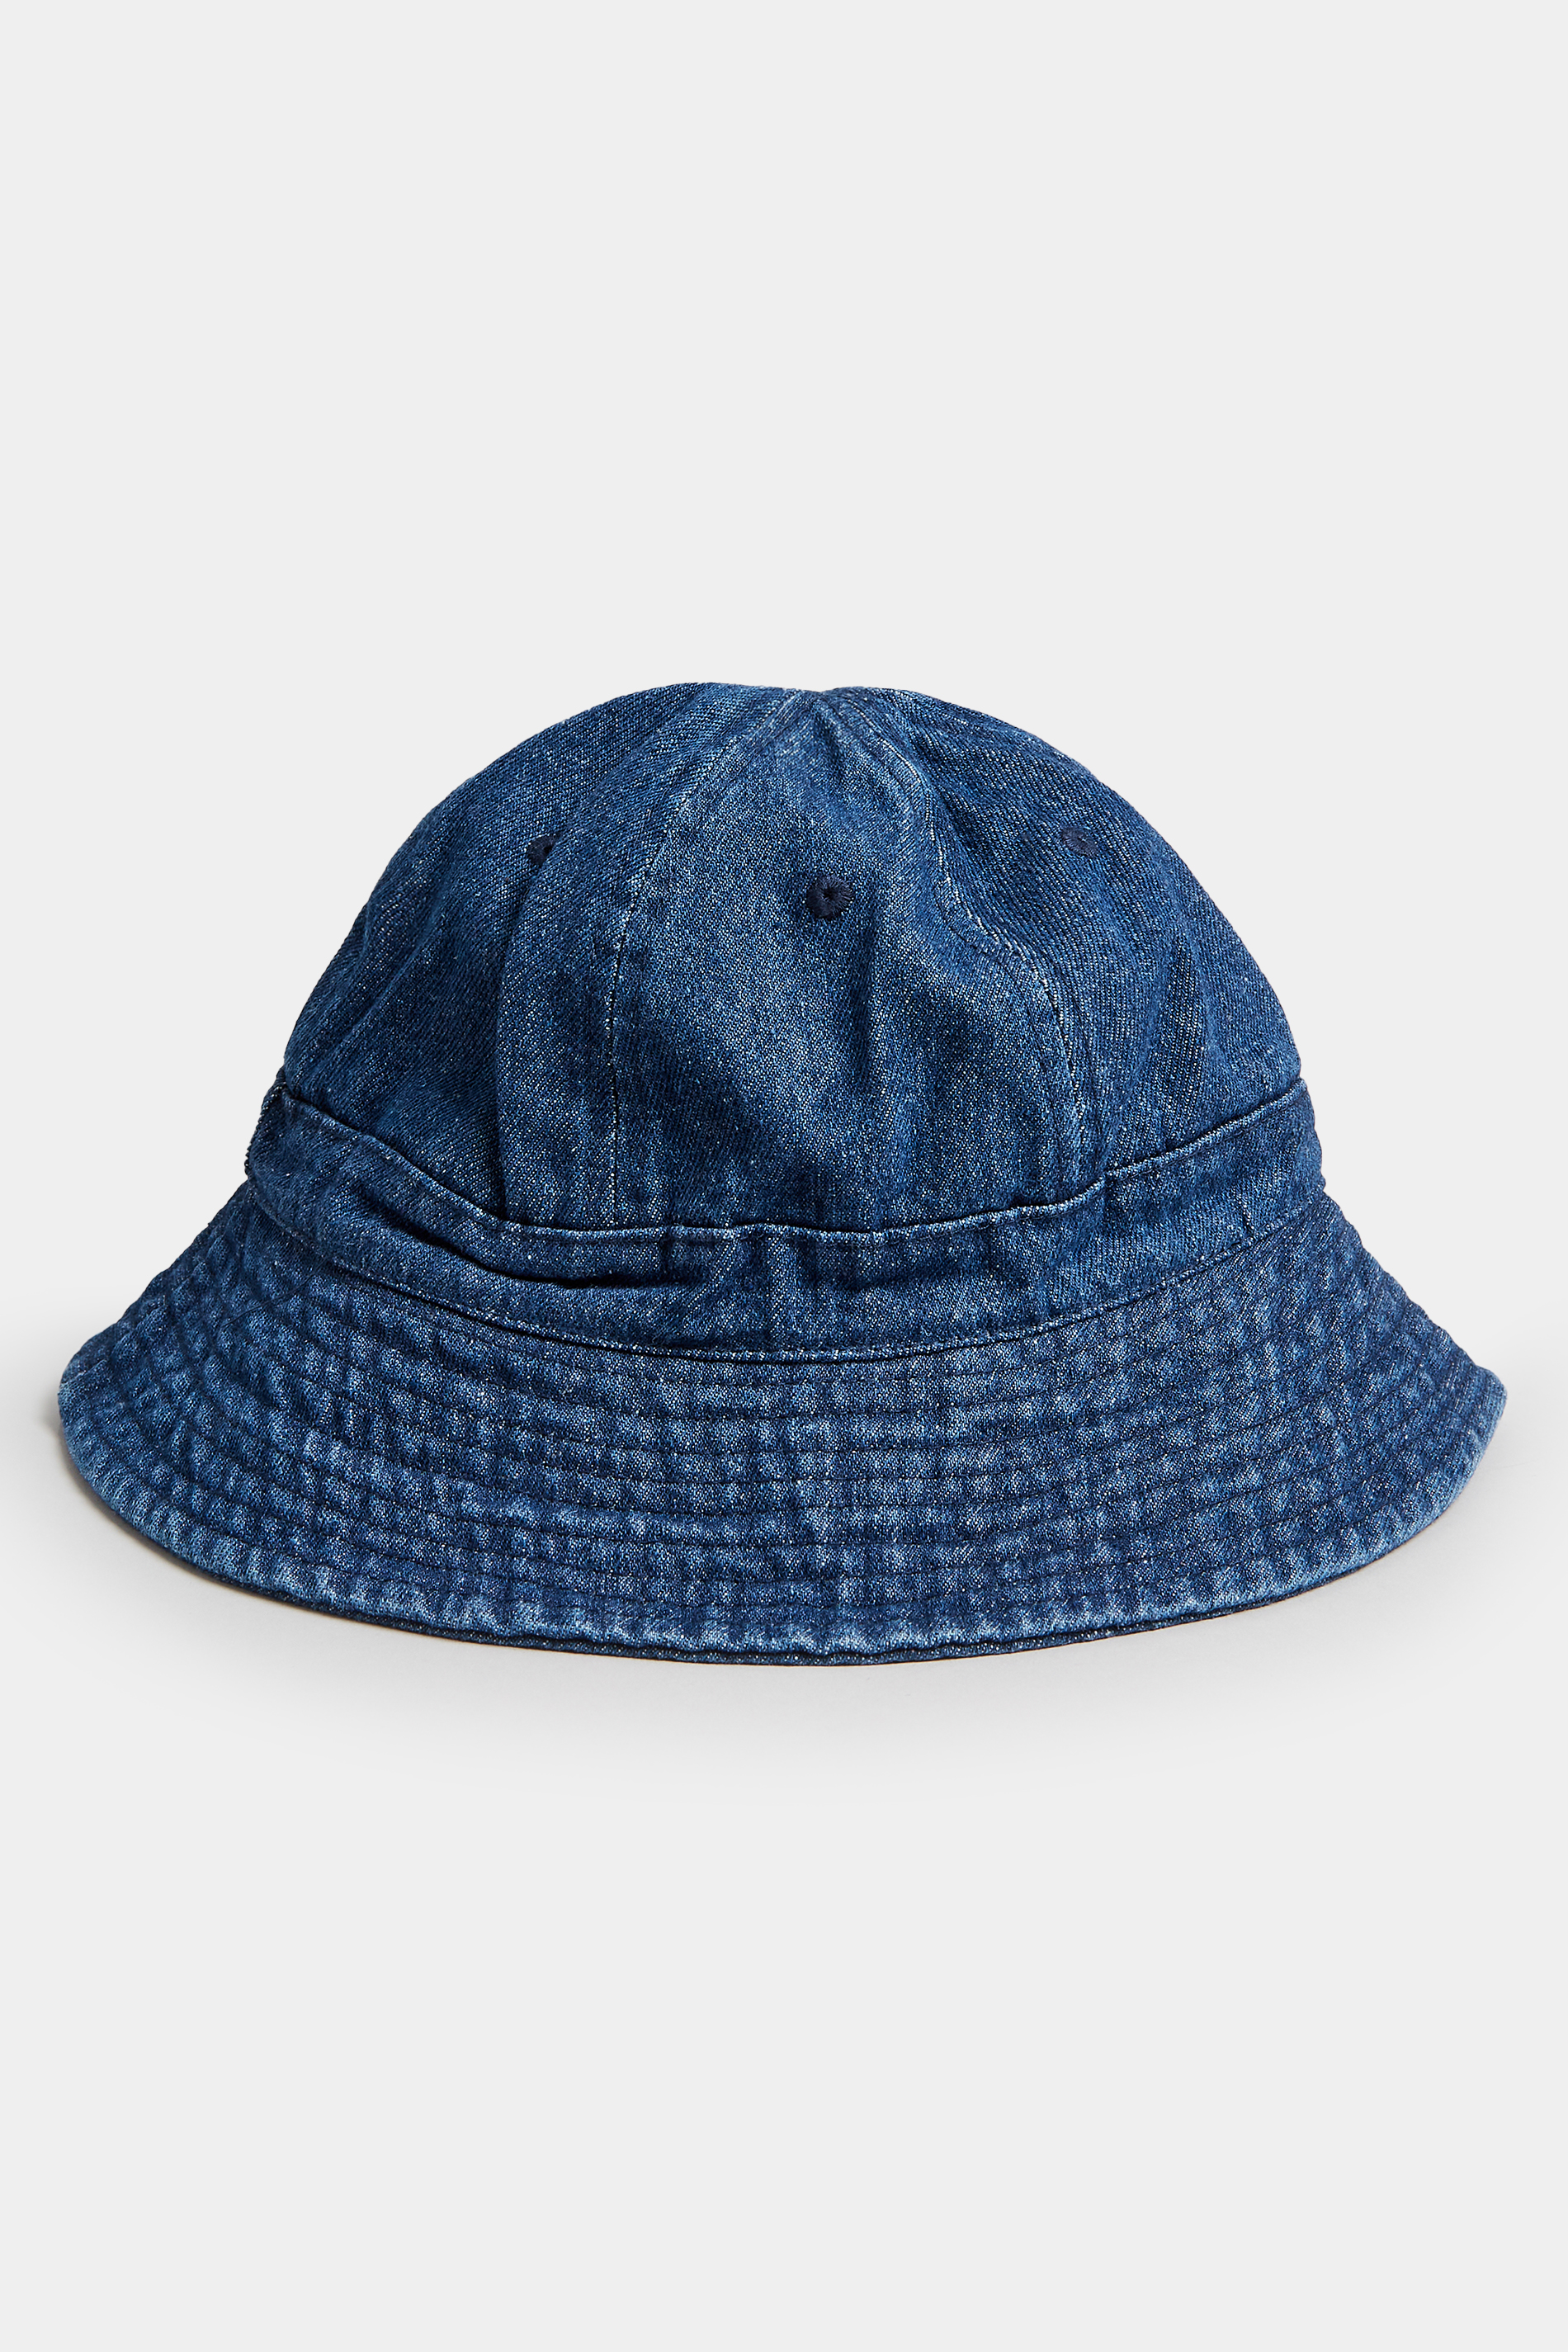 Indigo Blue Bucket Hat | Yours Clothing  2